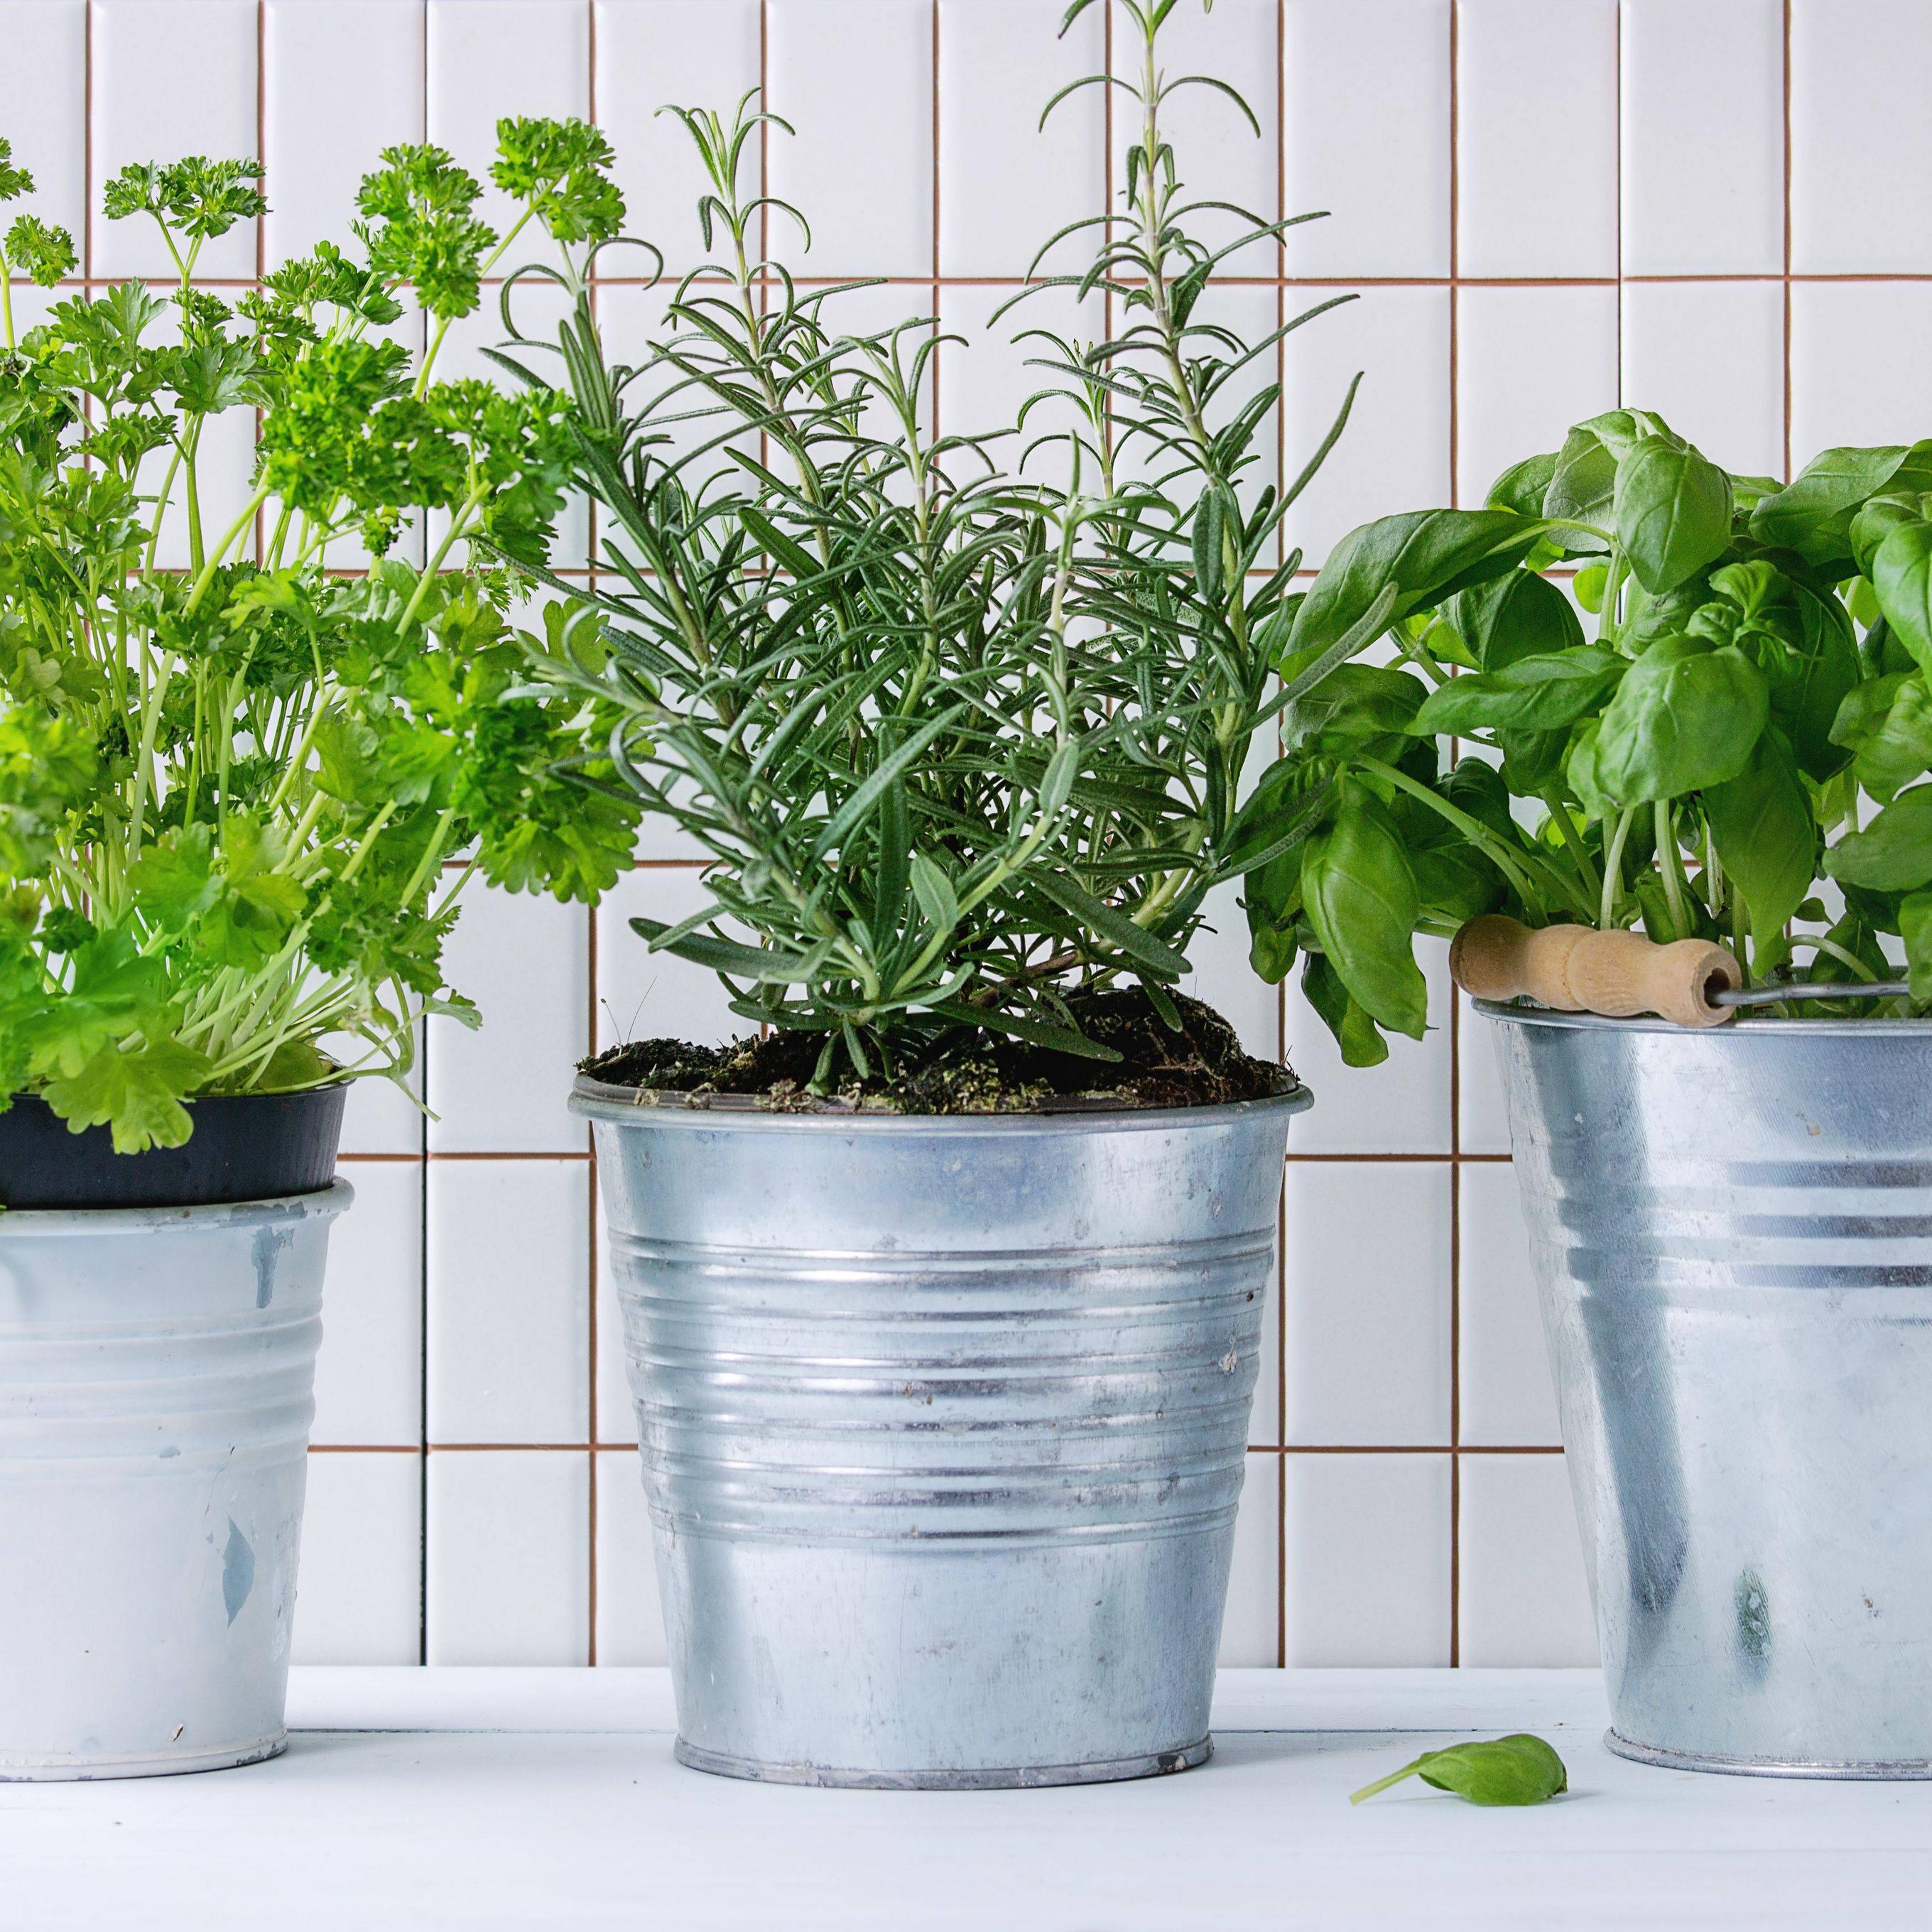 How to create an indoor vegetable garden
